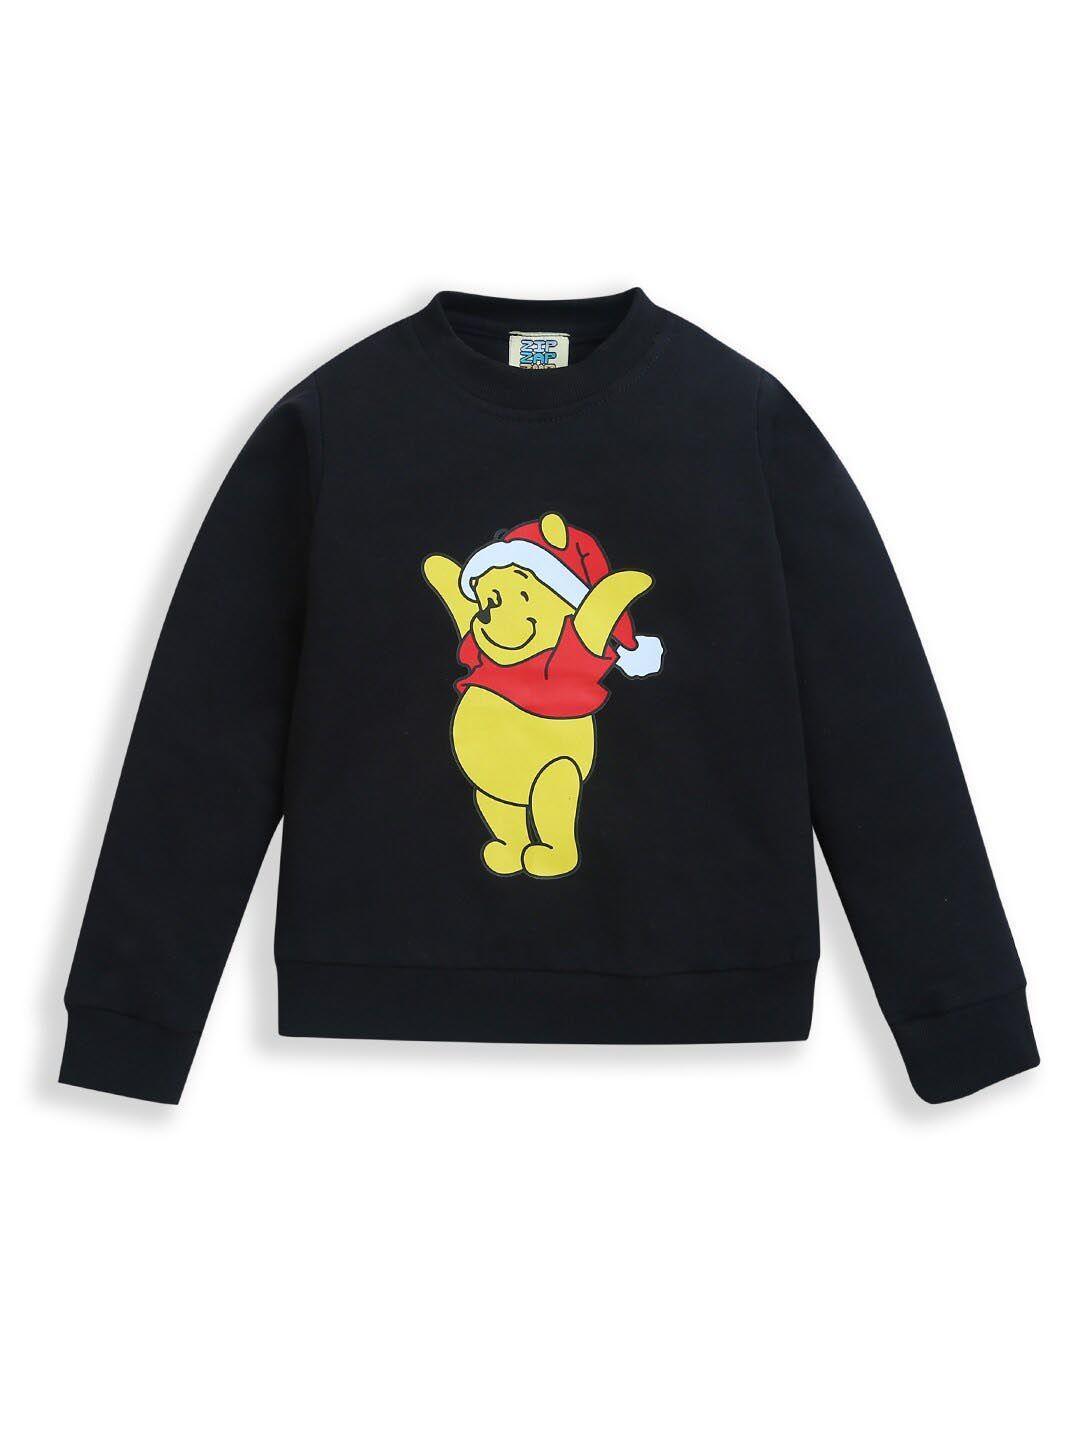 zip-zap-zoop-kids-graphic-printed-pure-cotton-pullover-sweatshirt